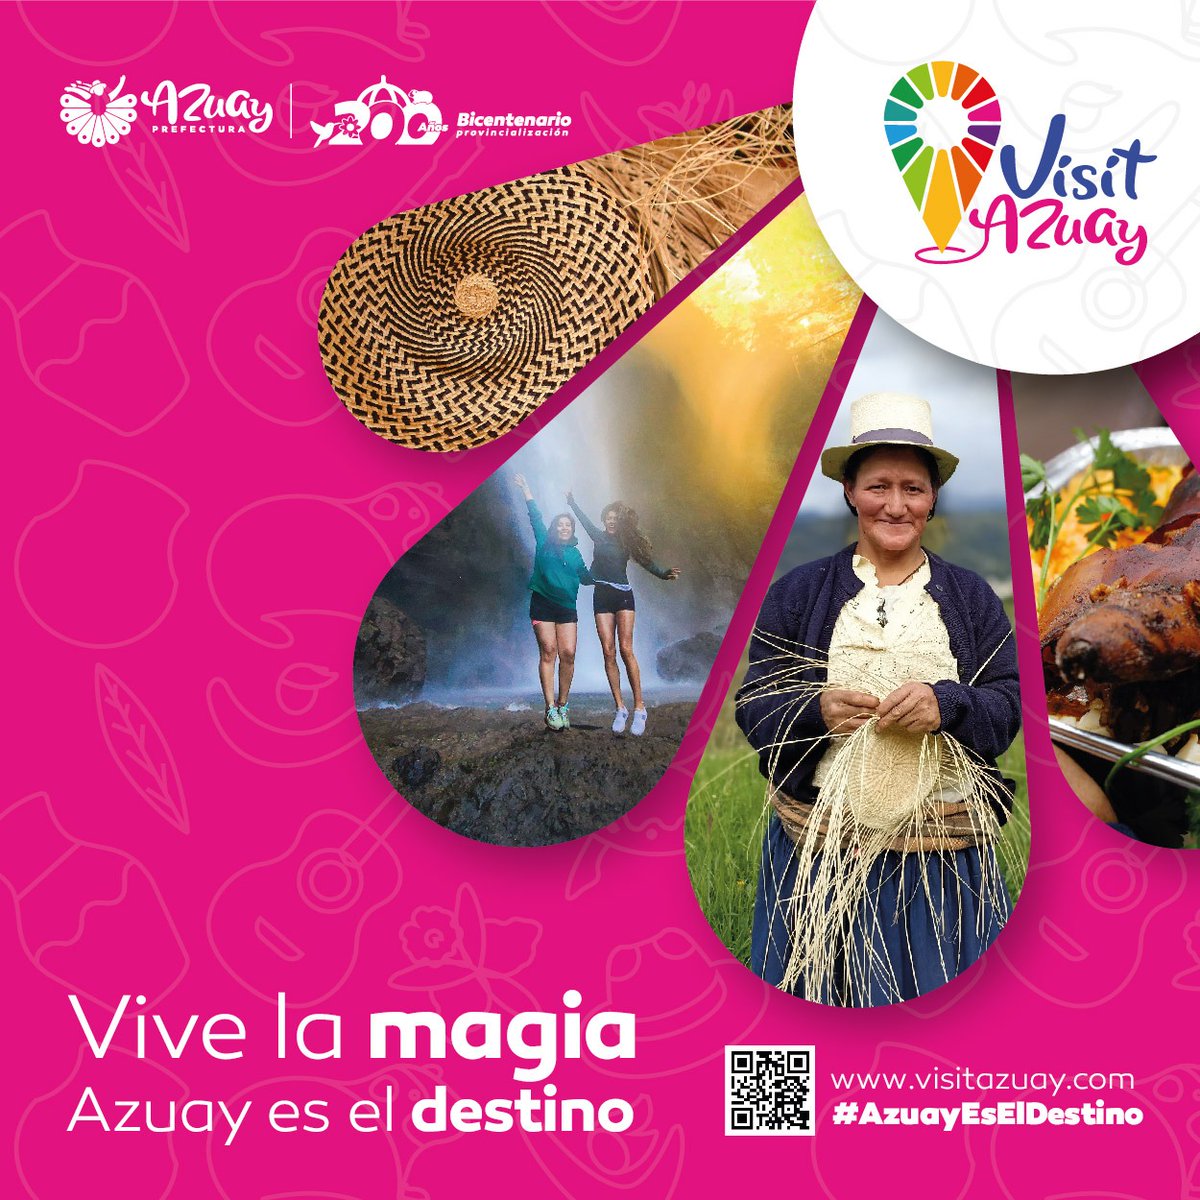 (P) #VisitAzuay 

¡#AzuayEsElDestino que te conecta con experiencias únicas! 📍👣🪂🍃🧗‍♀️⛺️🍎

Naturaleza, aventura, gastronomía, arte y cultura. 

La magia de la vida se revela en cada paso ❤️💛

#JotaPrefecto 
#AzuayPrefectura 
#AzuayBicentenario